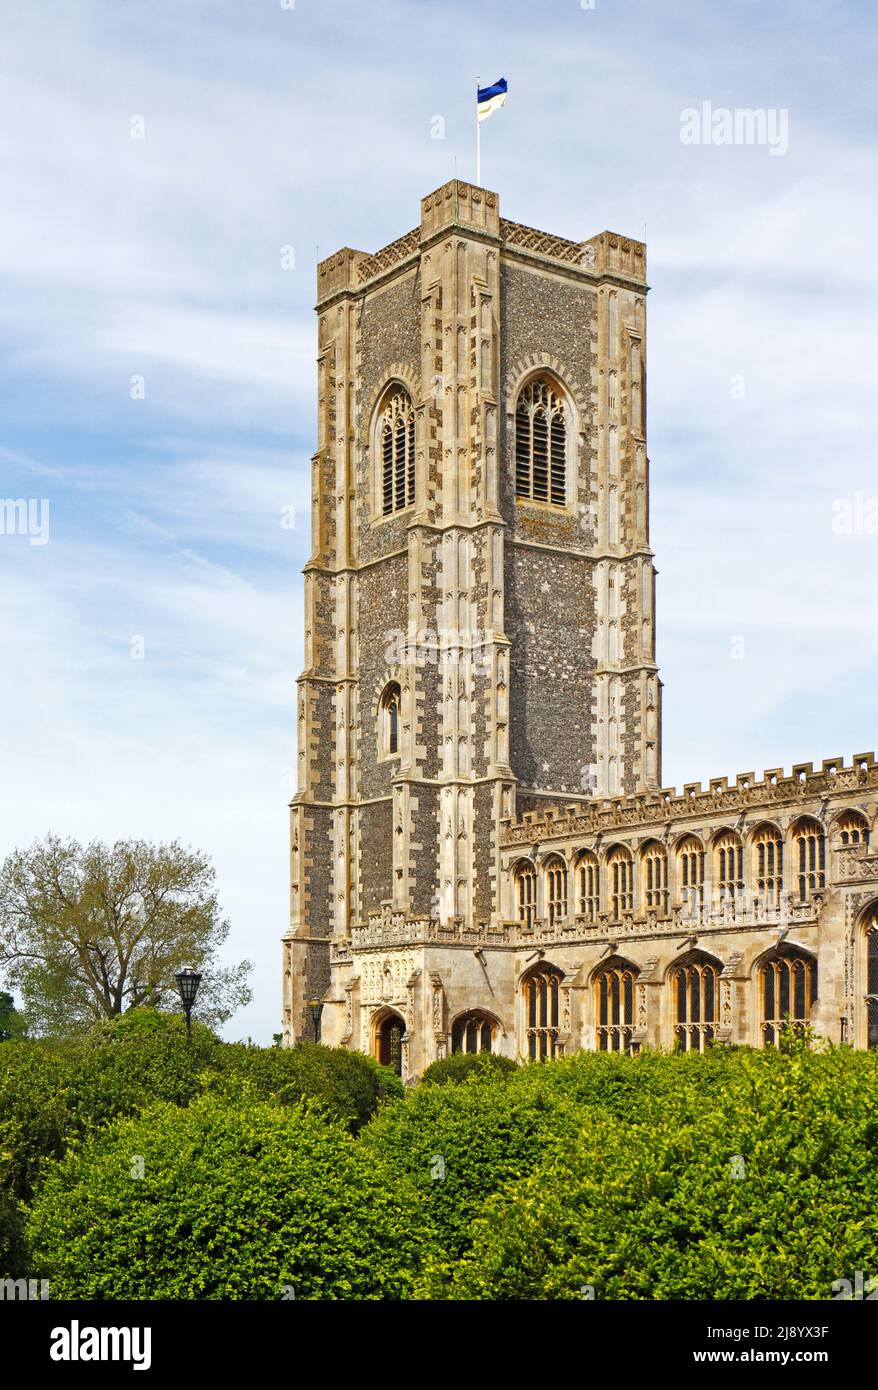 Blick auf den hohen Turm und die Südvertaufung der Pfarrkirche St. Peter und St. Paul im Dorf Lavenham, Suffolk, England, Vereinigtes Königreich. Stockfoto